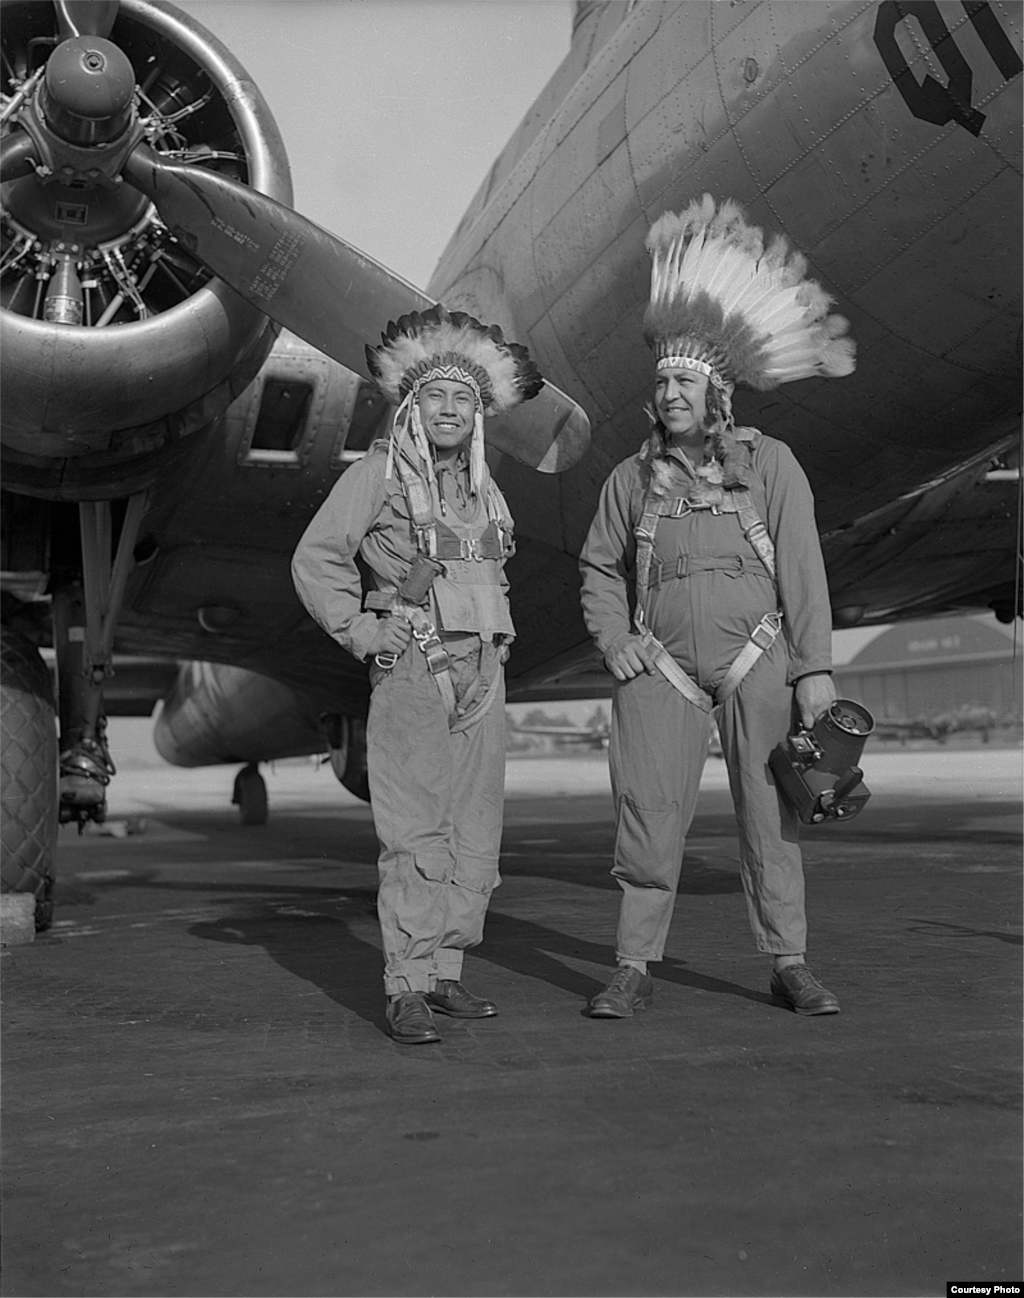 Гас Палмер, наводчик, и Хорас Пулоу, авиа фотограф (Кайова) на фоне самолета B-17. Тампа (Флорида), 1944 г.